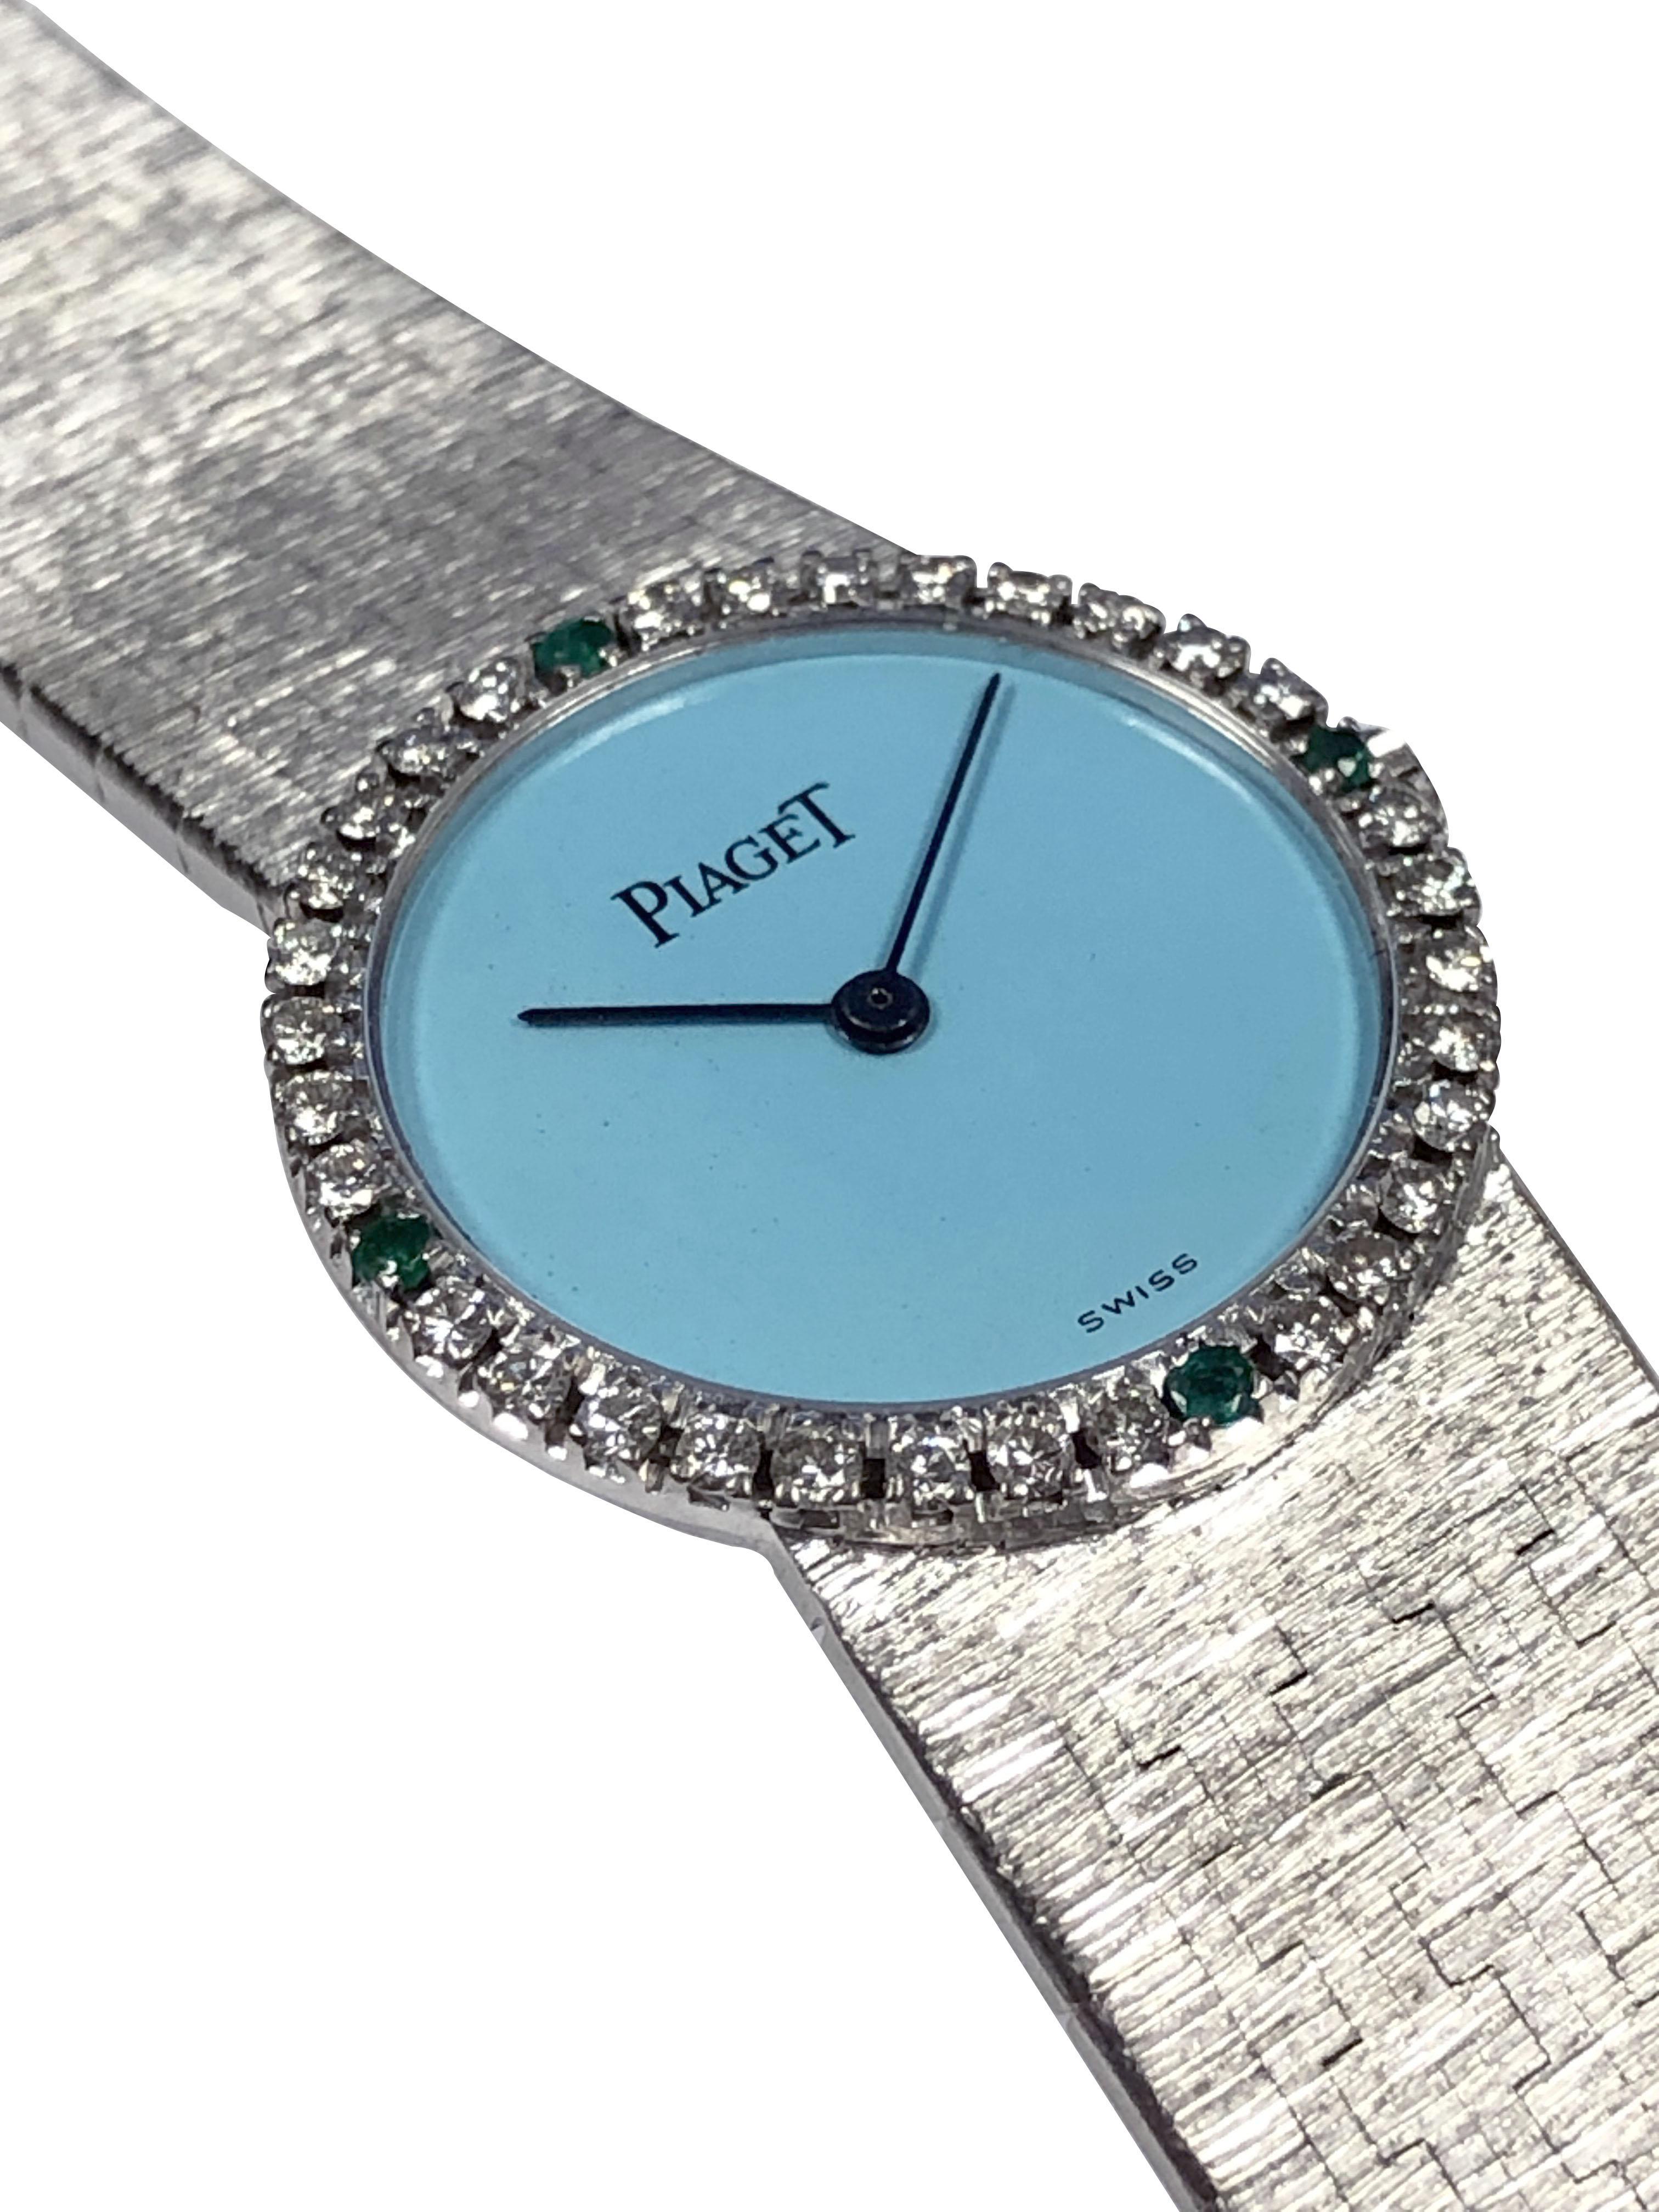 Circa 1970 Montre-bracelet Piaget, 24 M.M. Boîtier 2 pièces en or blanc 18k avec lunette sertie de diamants et d'émeraudes. Mouvement mécanique à remontage manuel, cadran turquoise. Bracelet texturé à mailles intégrées de 5/8 pouces de large. 